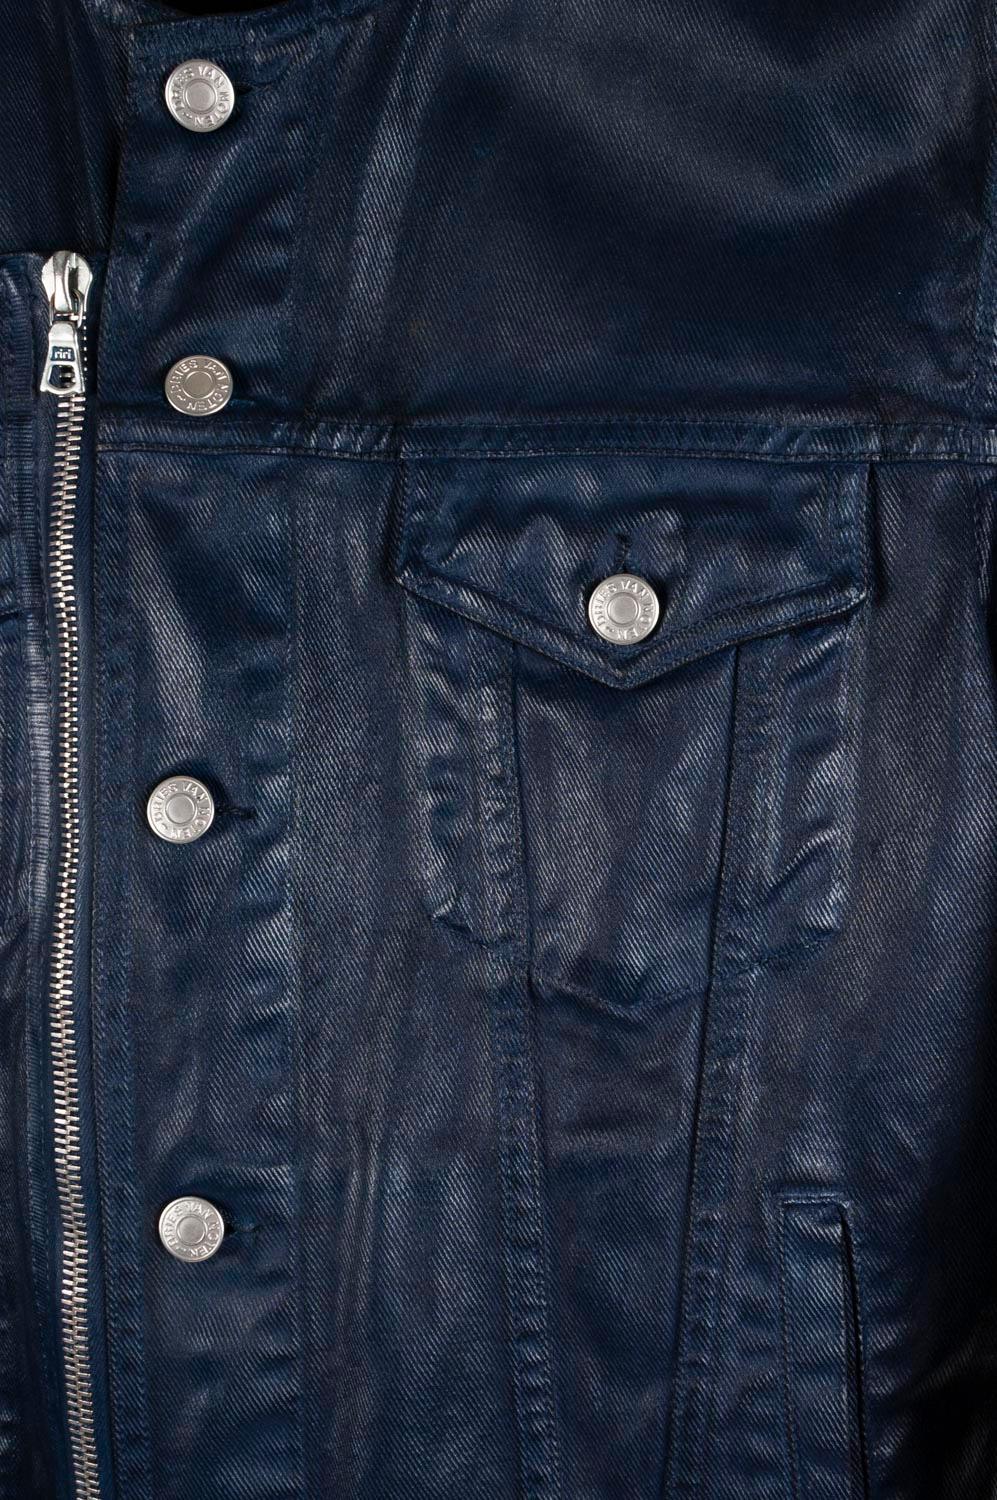 Dries Van Noten Coated Men Denim Jacket Size M In Good Condition For Sale In Kaunas, LT